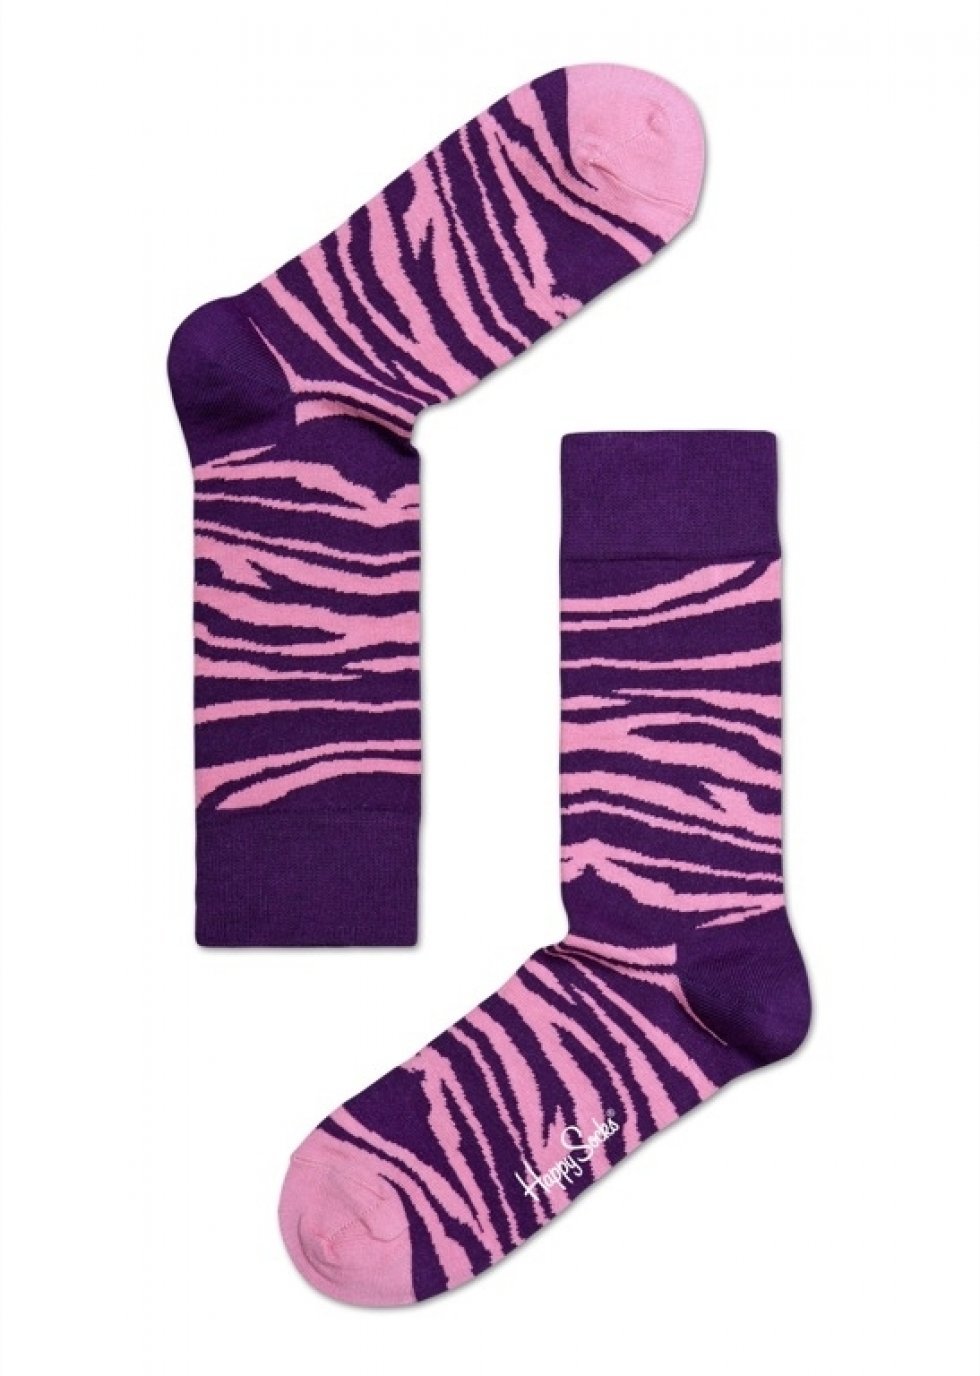 Vilde zebra socks. - Glade sommerdage med Happy Socks